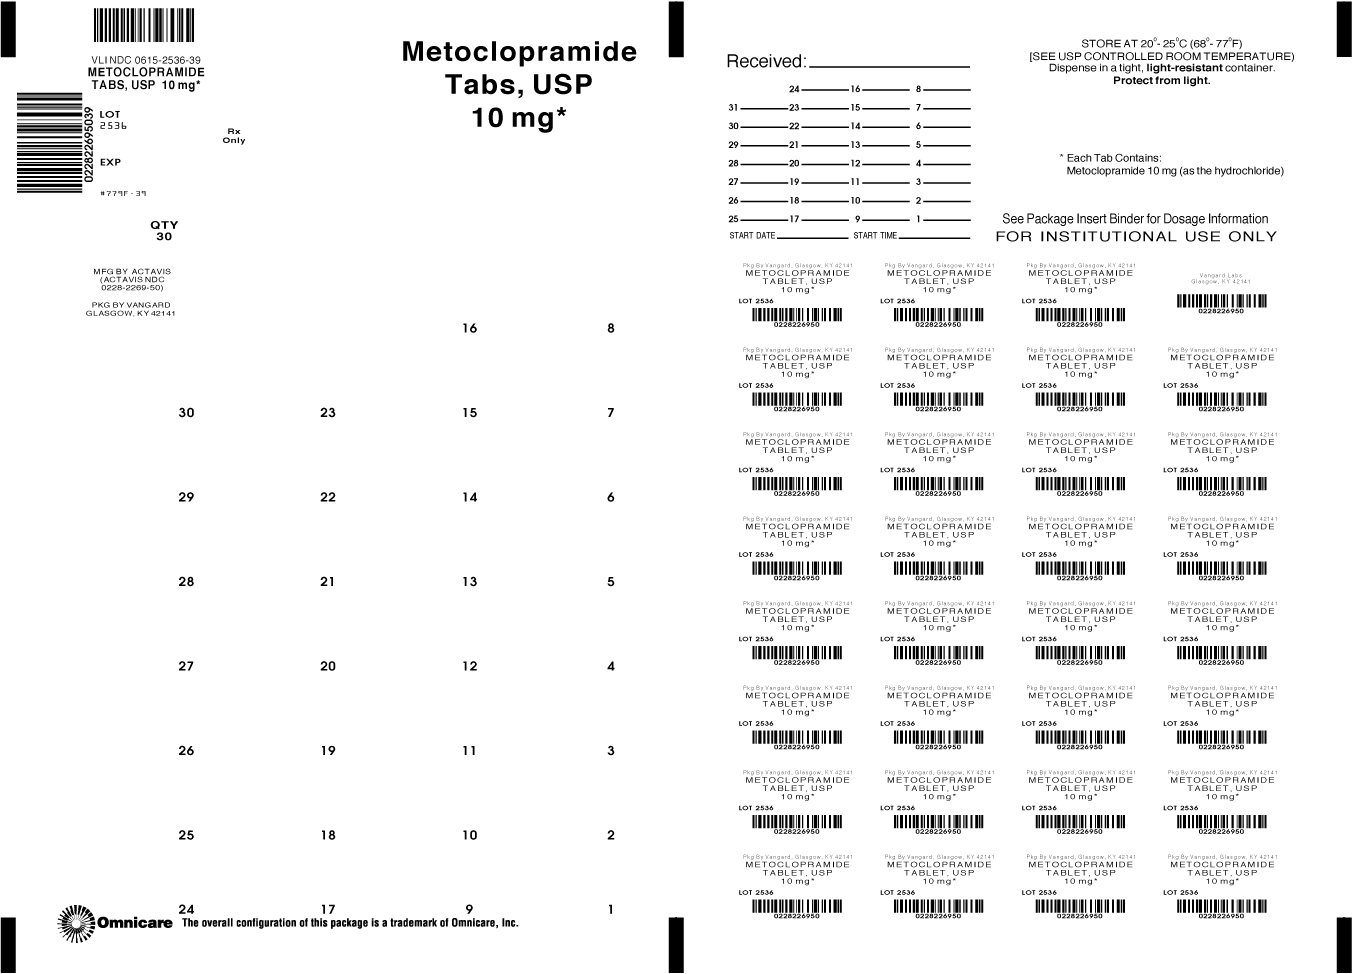 Principal Display Panel-Metoclopramide Tablets, USP 10mg